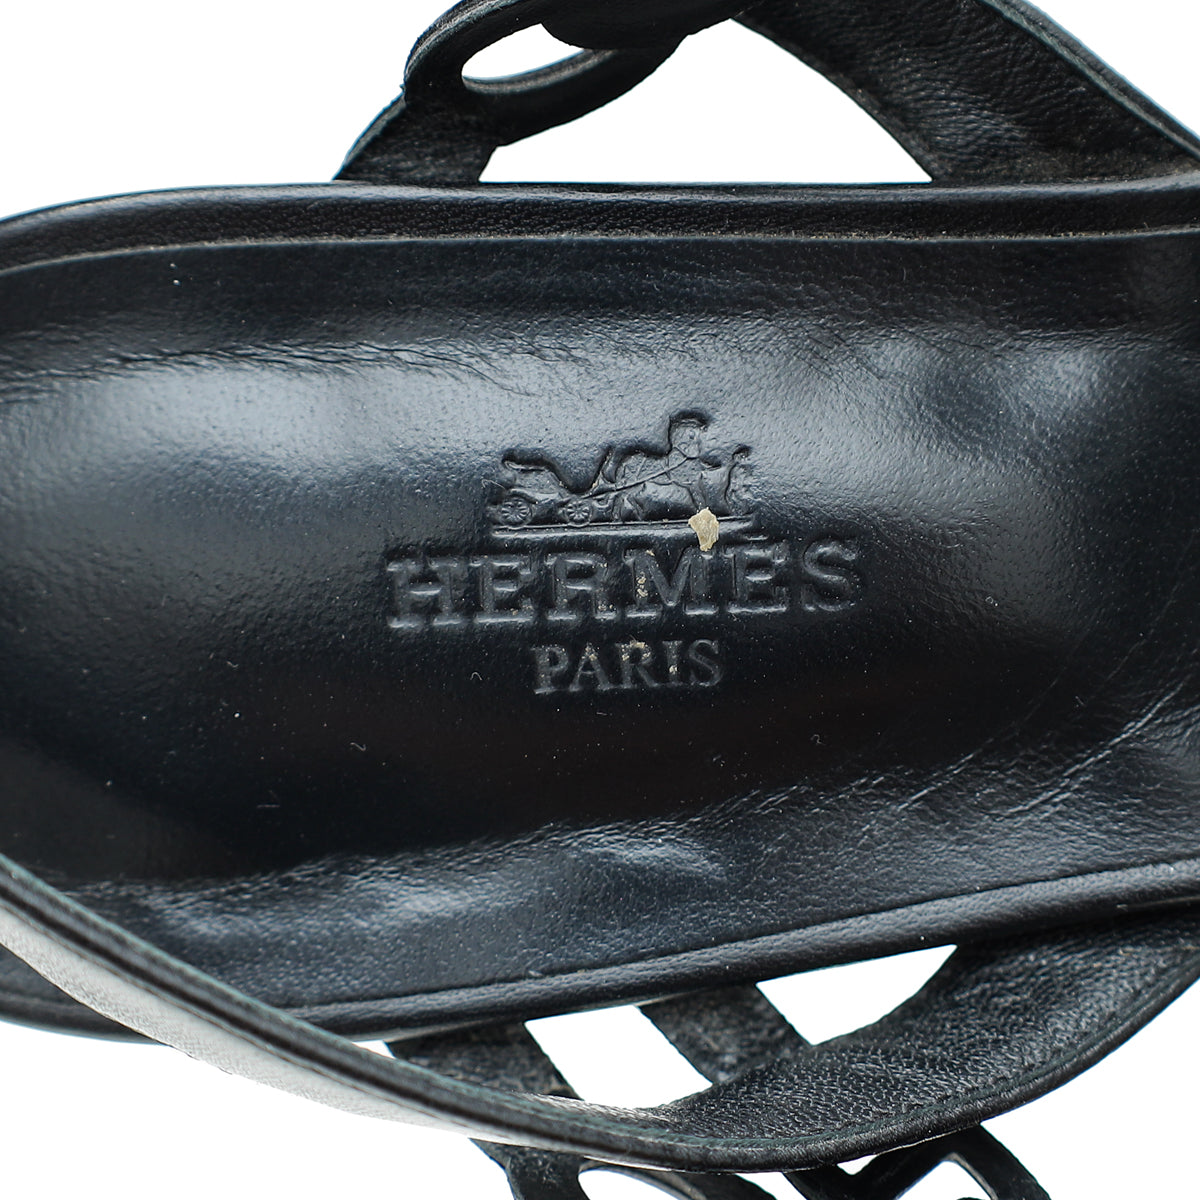 Hermes Noir Romanza Sandals 39.5